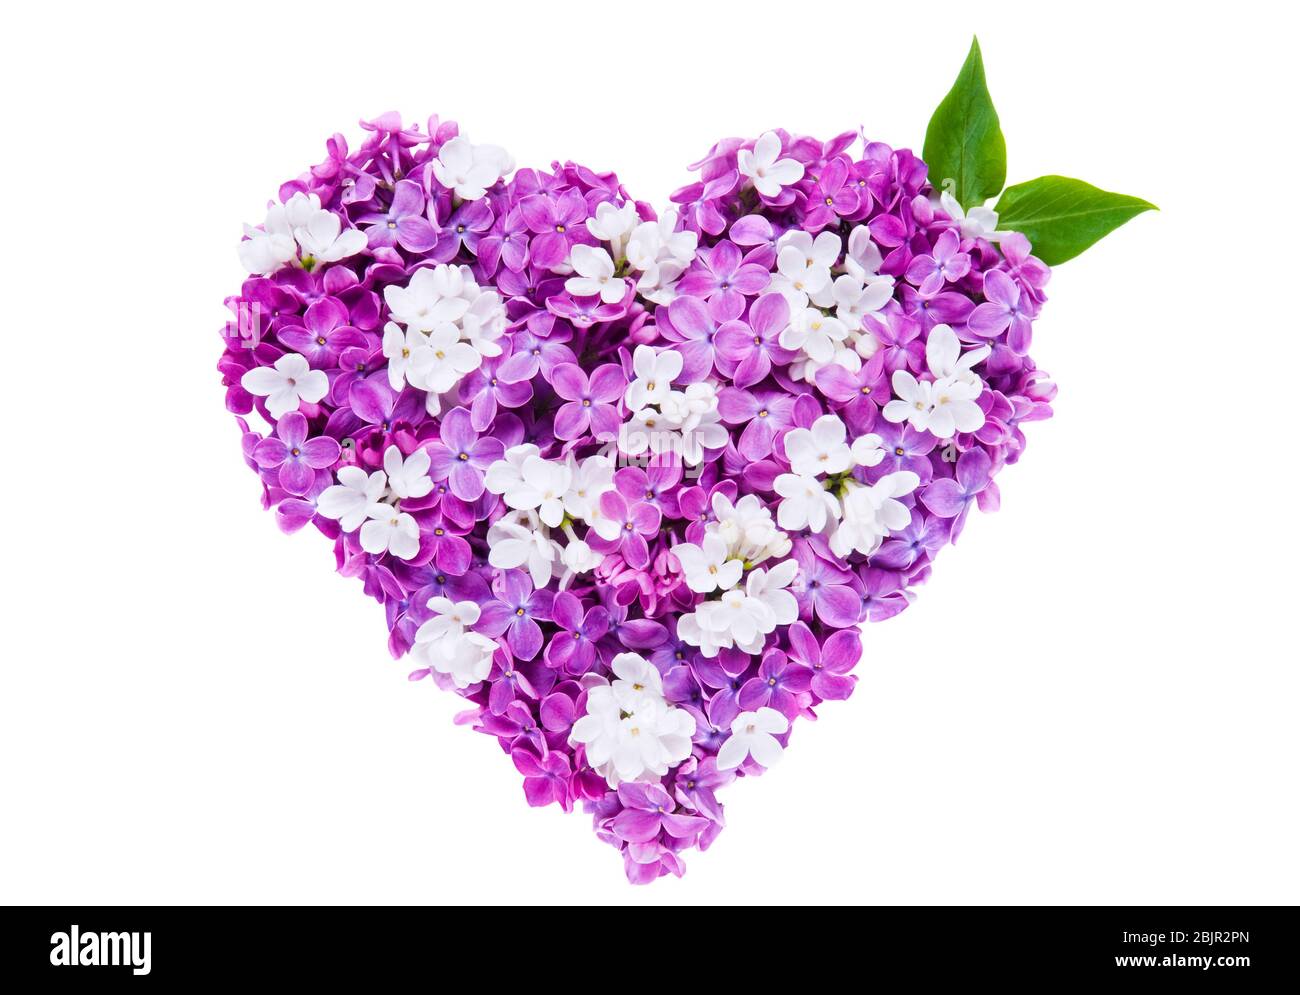 Símbolo de corazón hecho de flores lila violeta frescas aisladas sobre fondo blanco. Concepto de amor para San Valentín y día de la Madre. Foto de stock